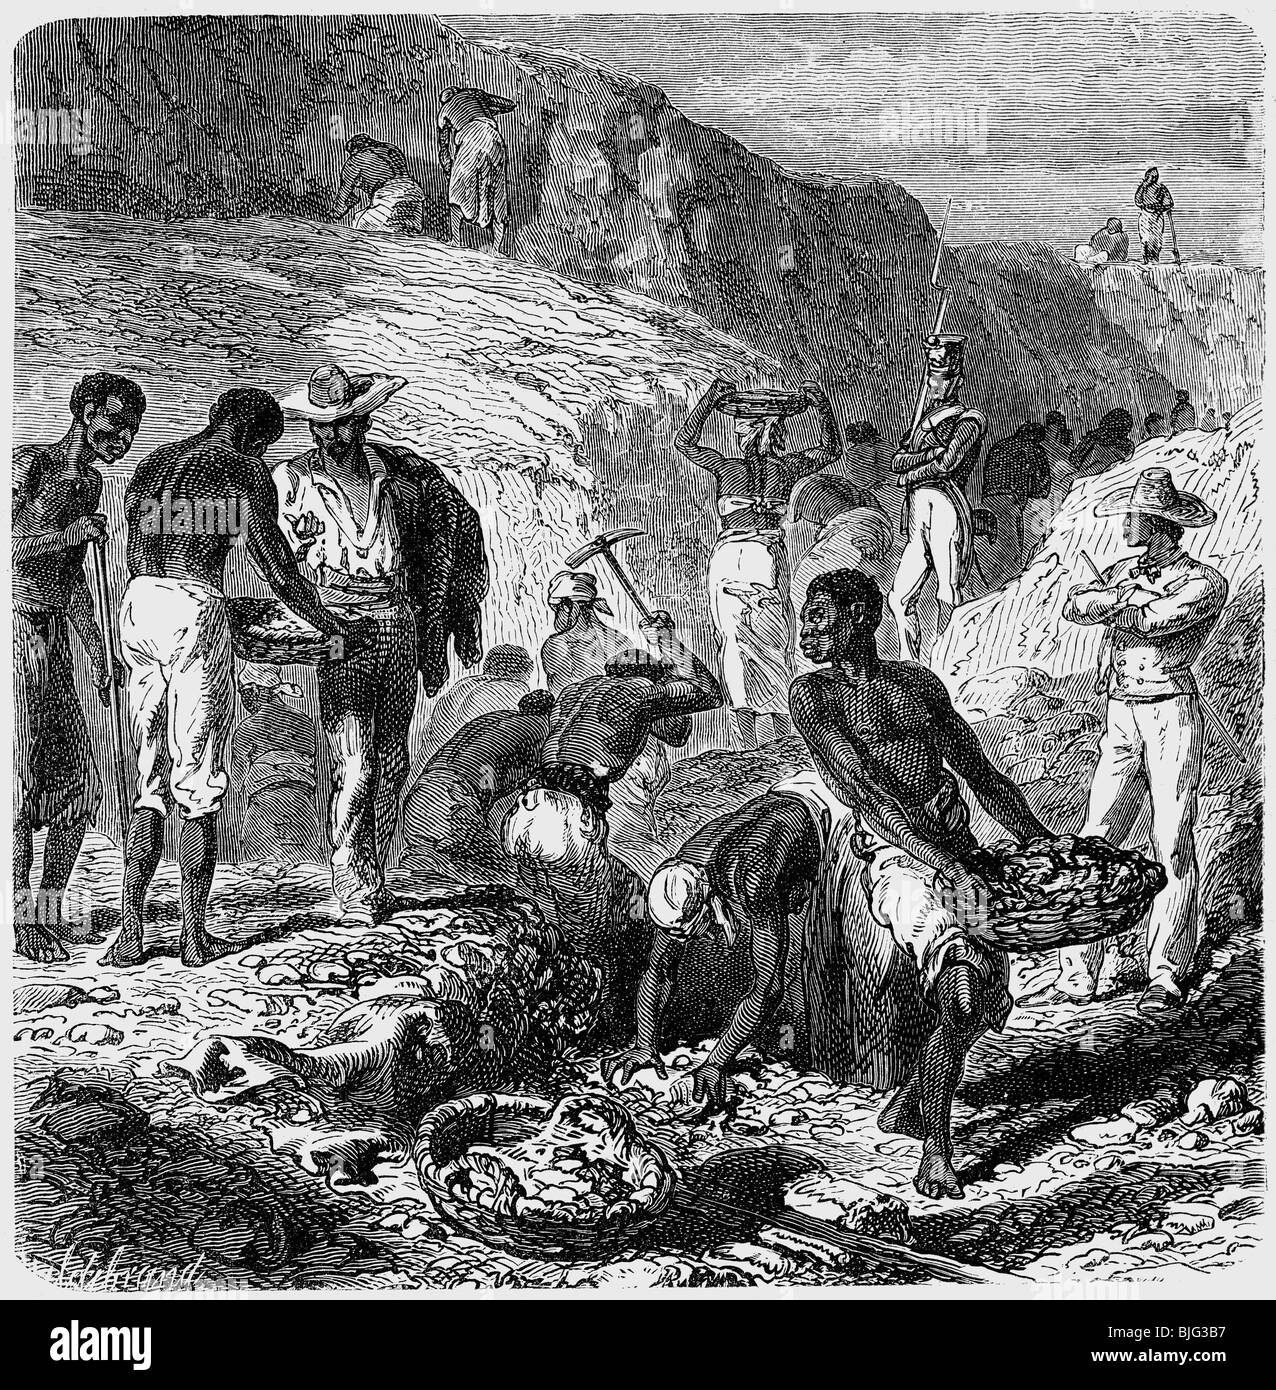 Los esclavos del oro: Termitas humanas de oro africano